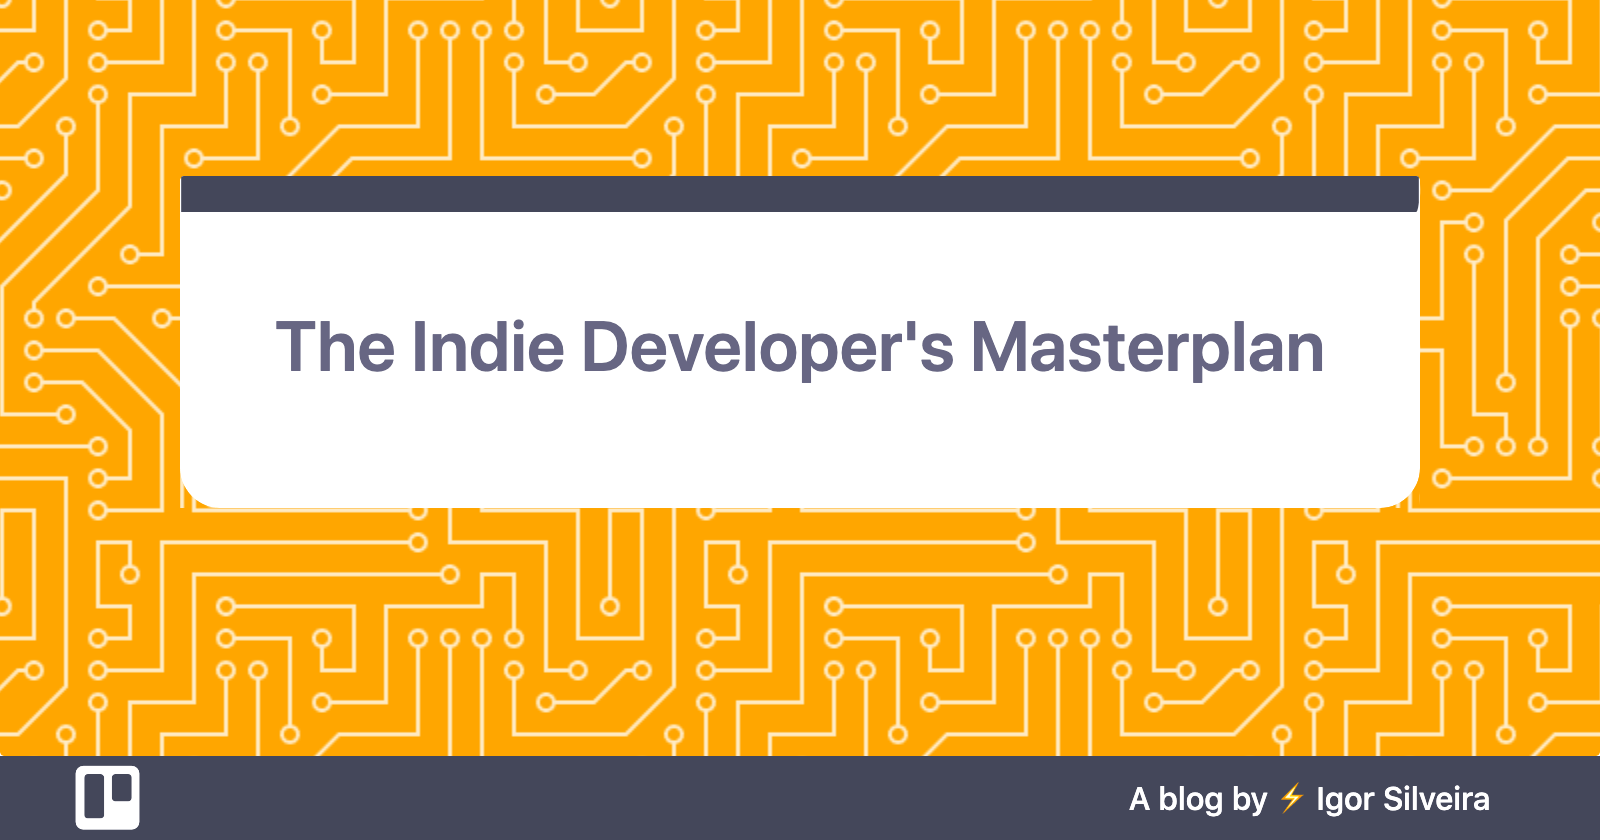 The Indie Developer's Masterplan